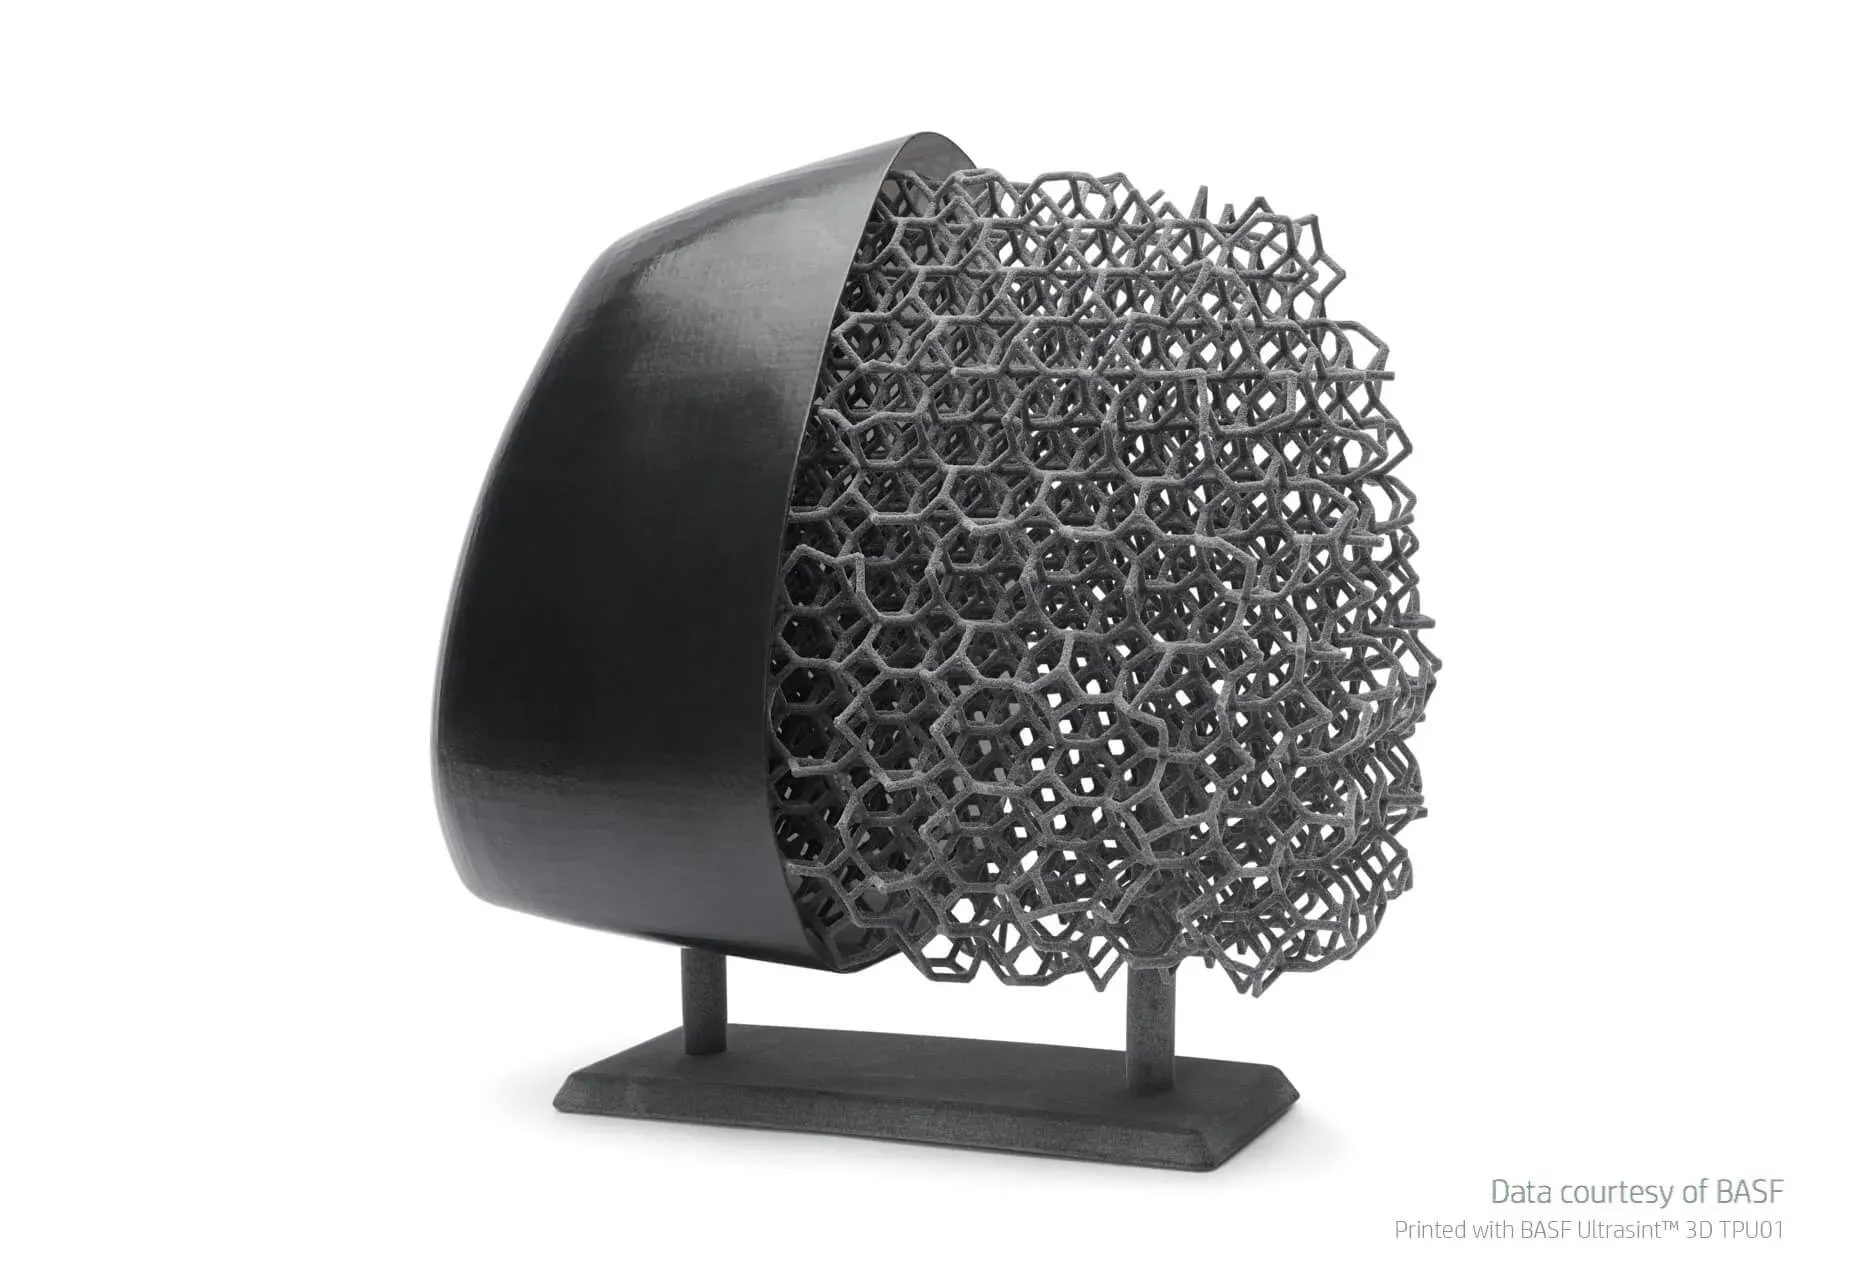 Kopfstütze mit Gitternetzstruktur 3D gedruckt in BASF Ultrasint TPU